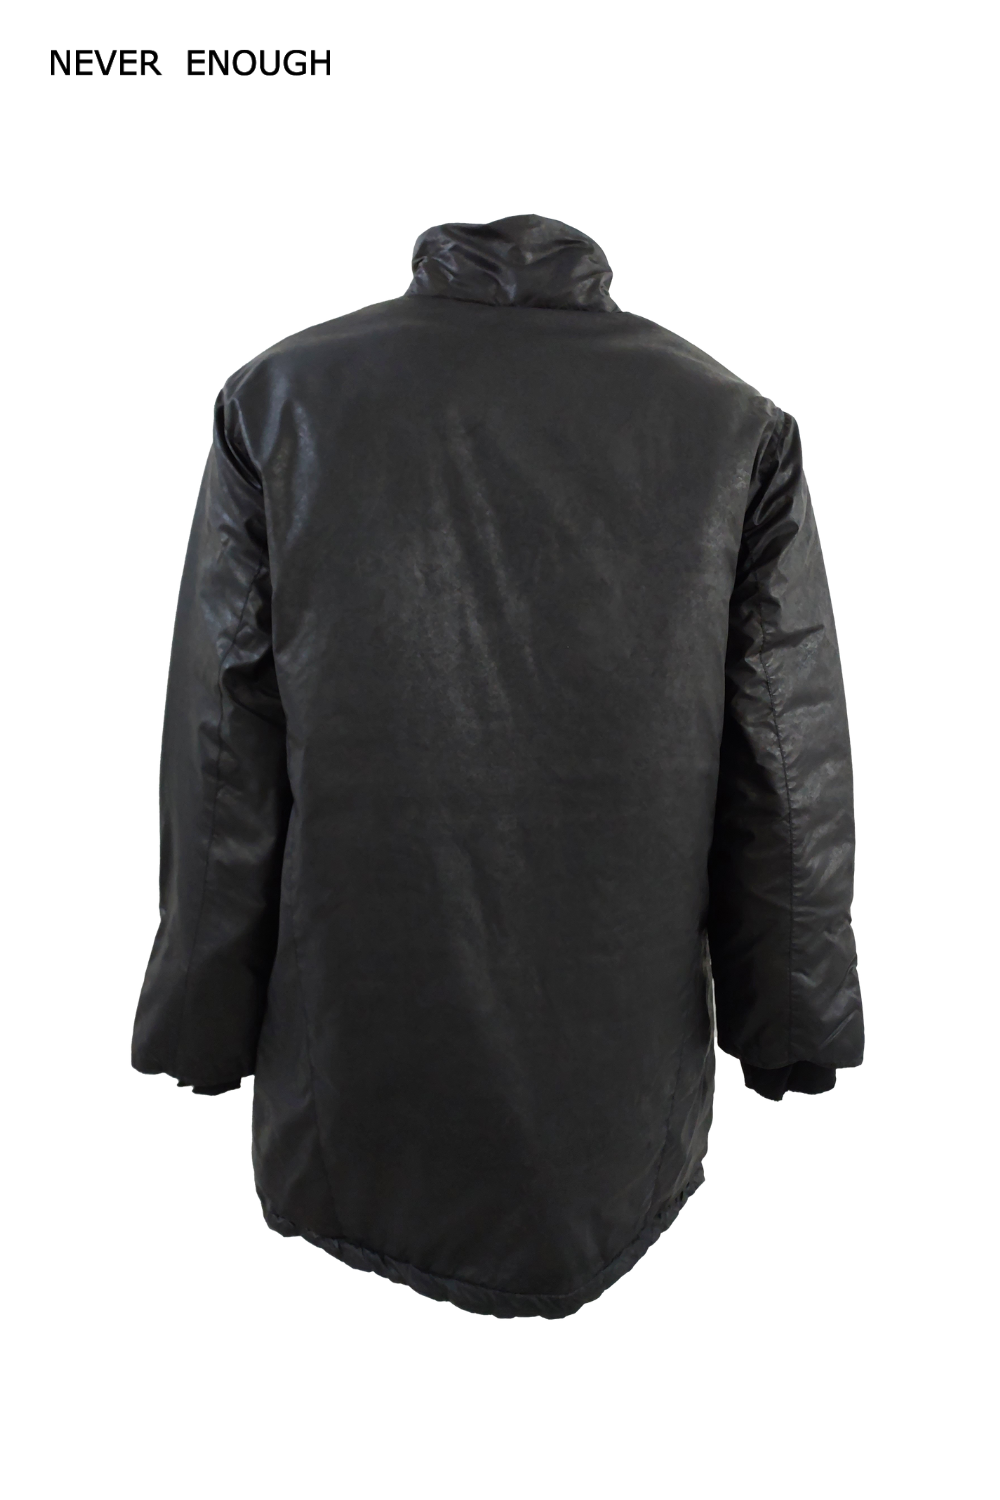 Man jacket MJA003